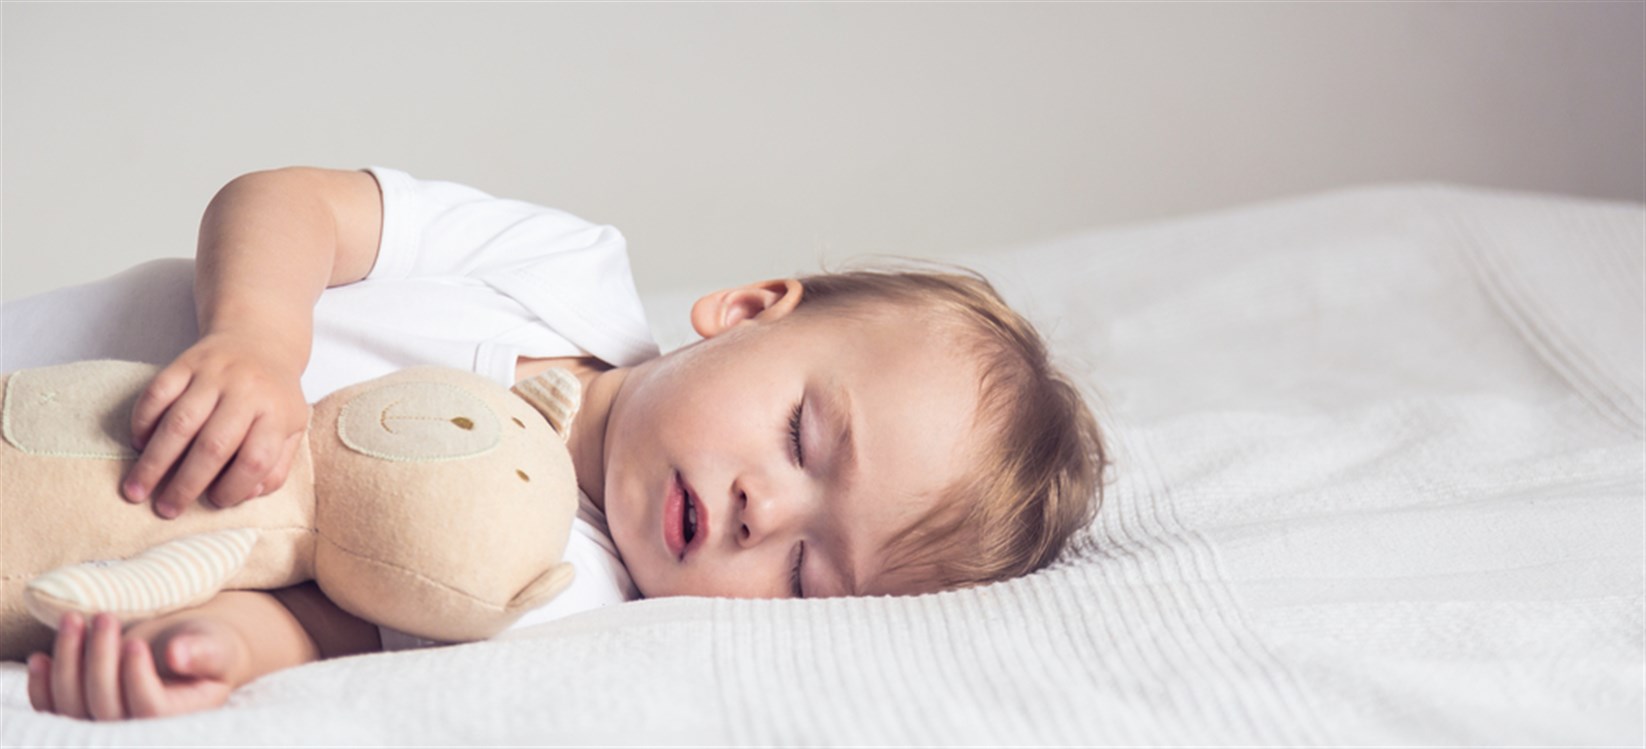 صعوبة التنفس عند الاطفال خلال النوم